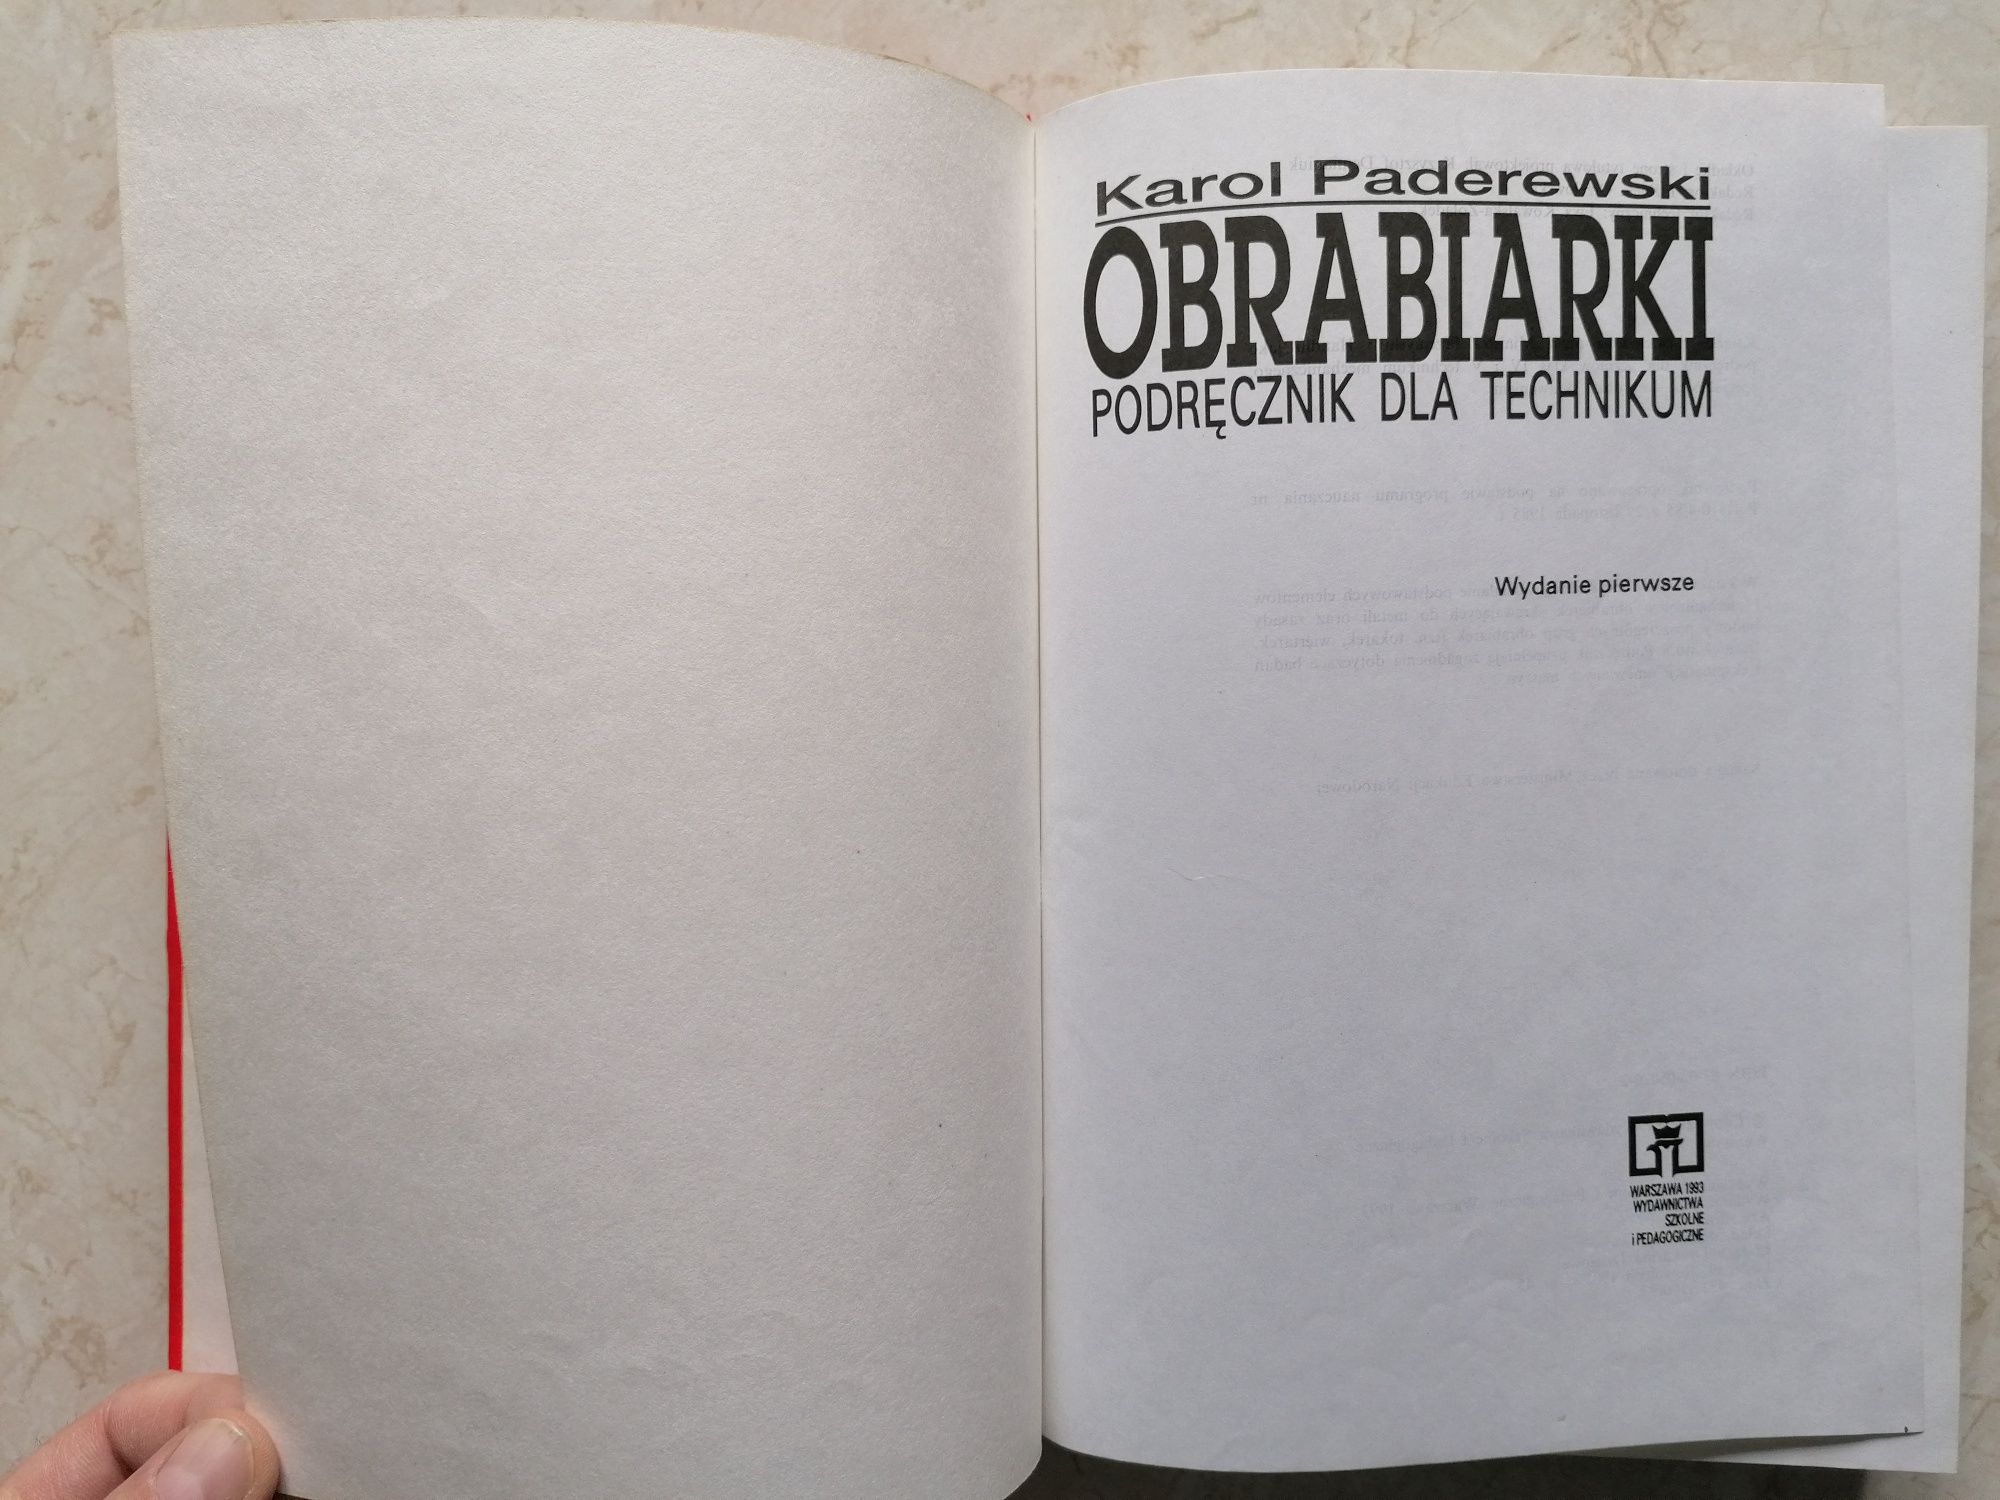 IDEAŁ Podręcznik dla Technikum OBRABIARKI Karol Paderewski